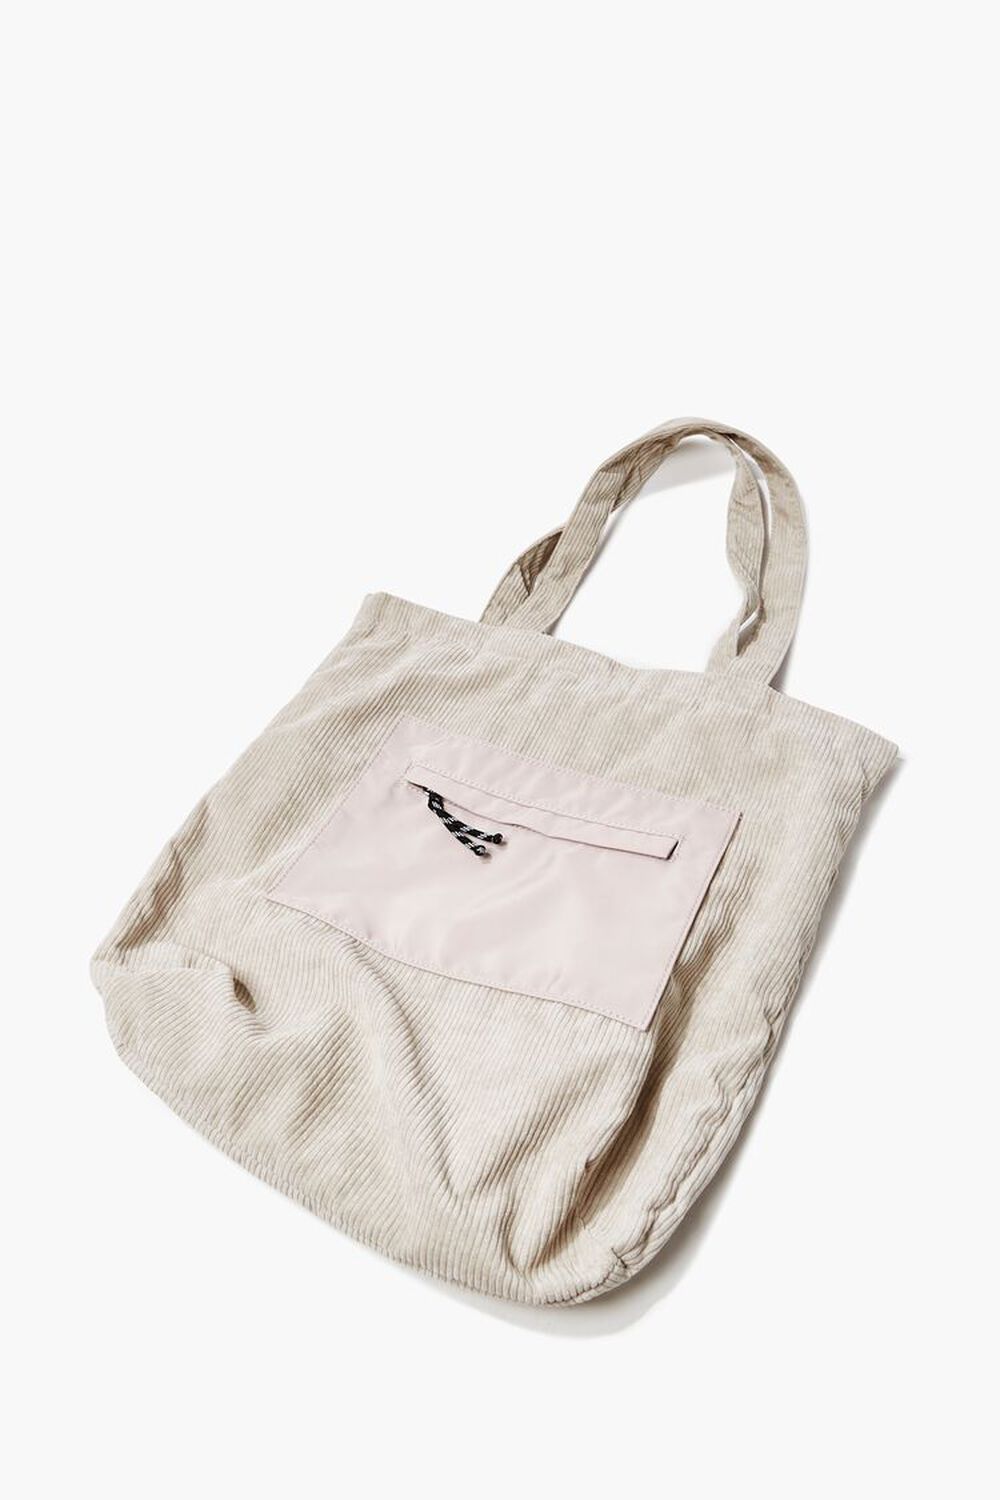 WHITE Zip-Pocket Tote Bag, image 1